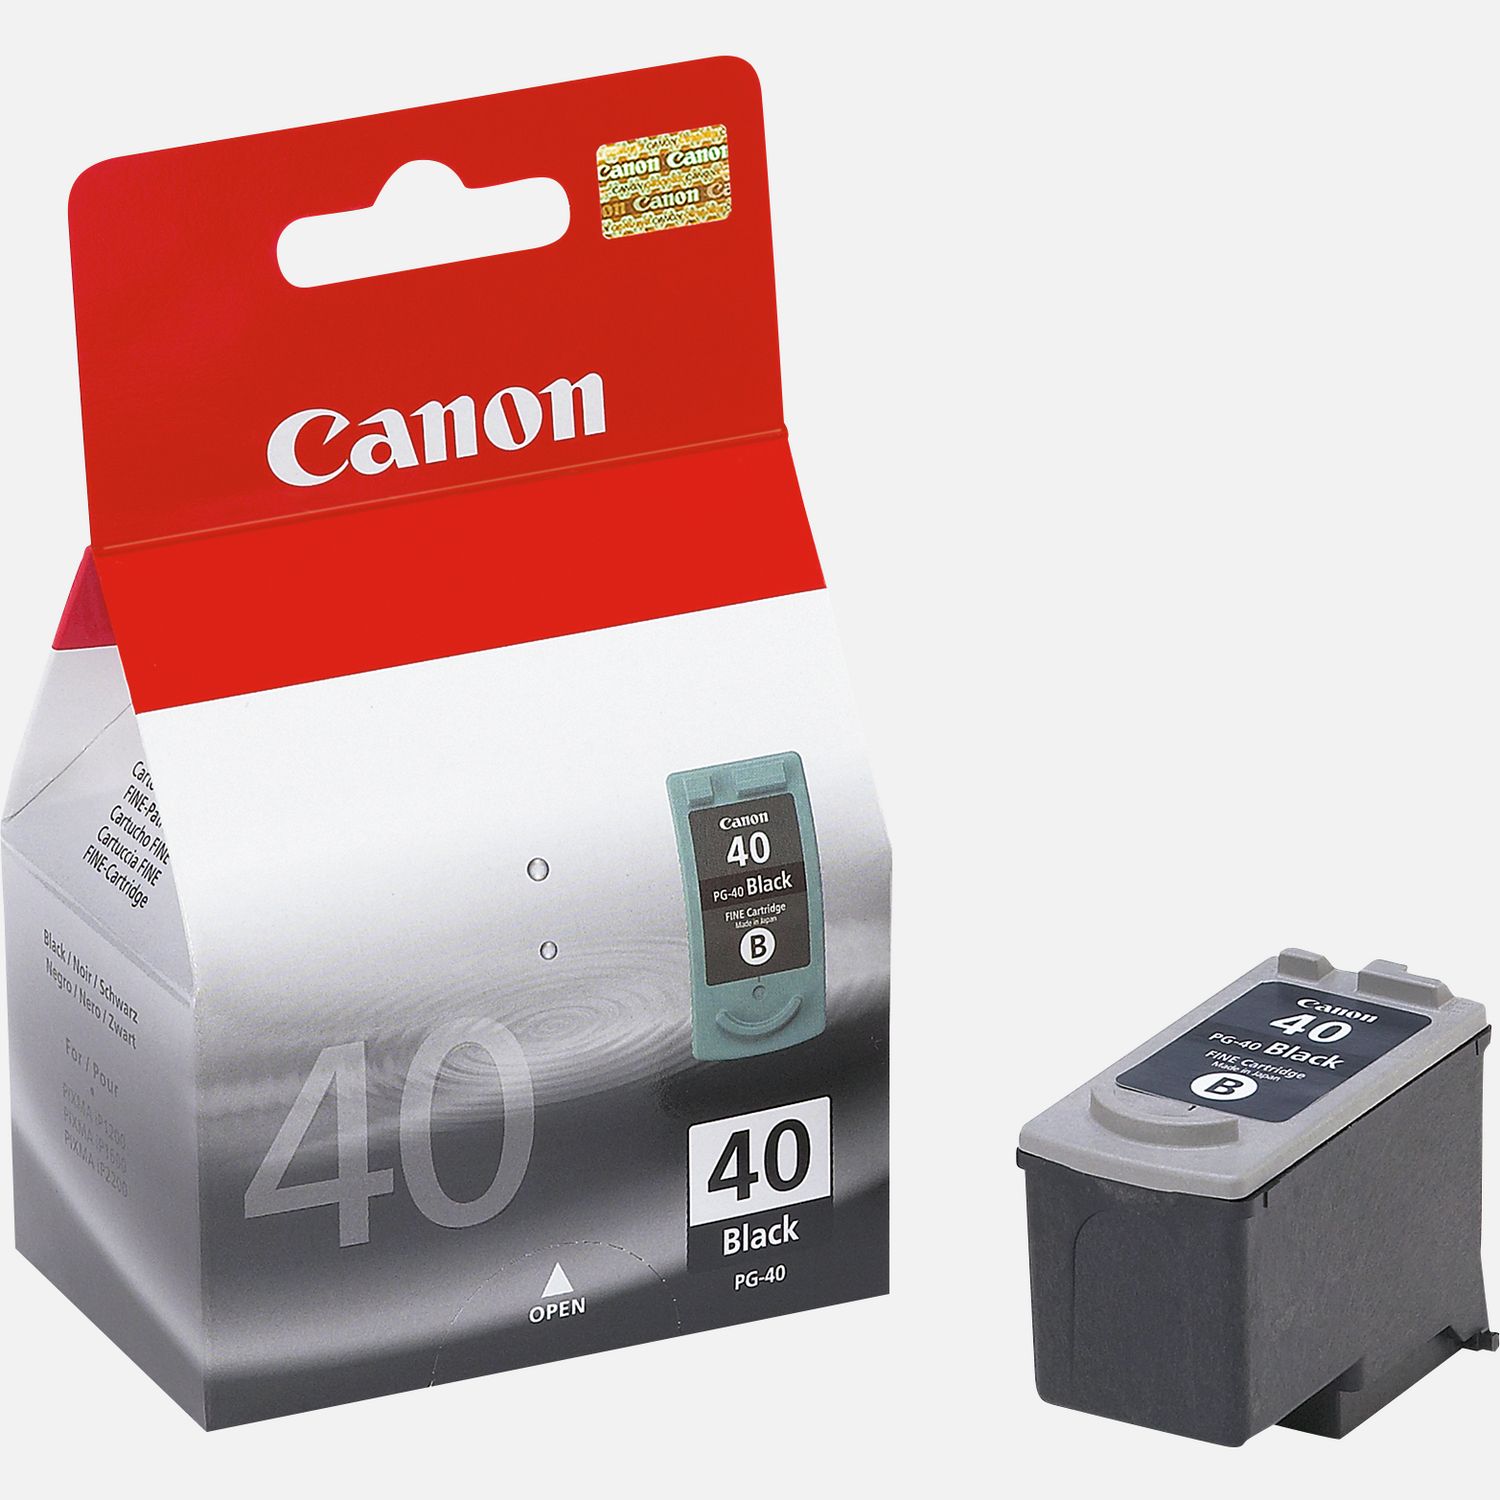 Cartouche vide Canon PG-540 - Rachat de cartouches